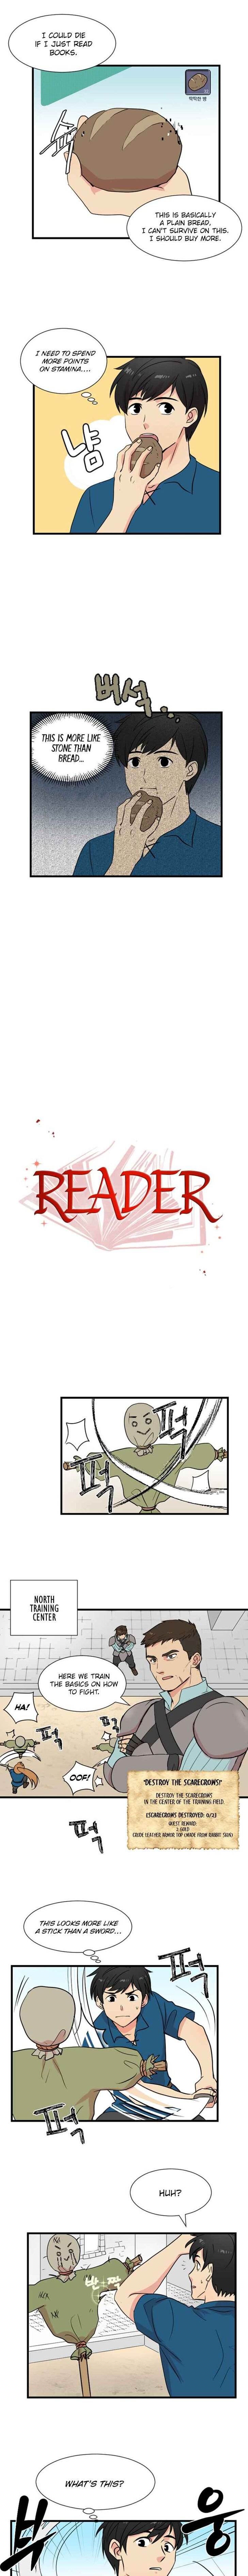 Reader (Chang Han-Yoon) Chapter 2 - Page 1